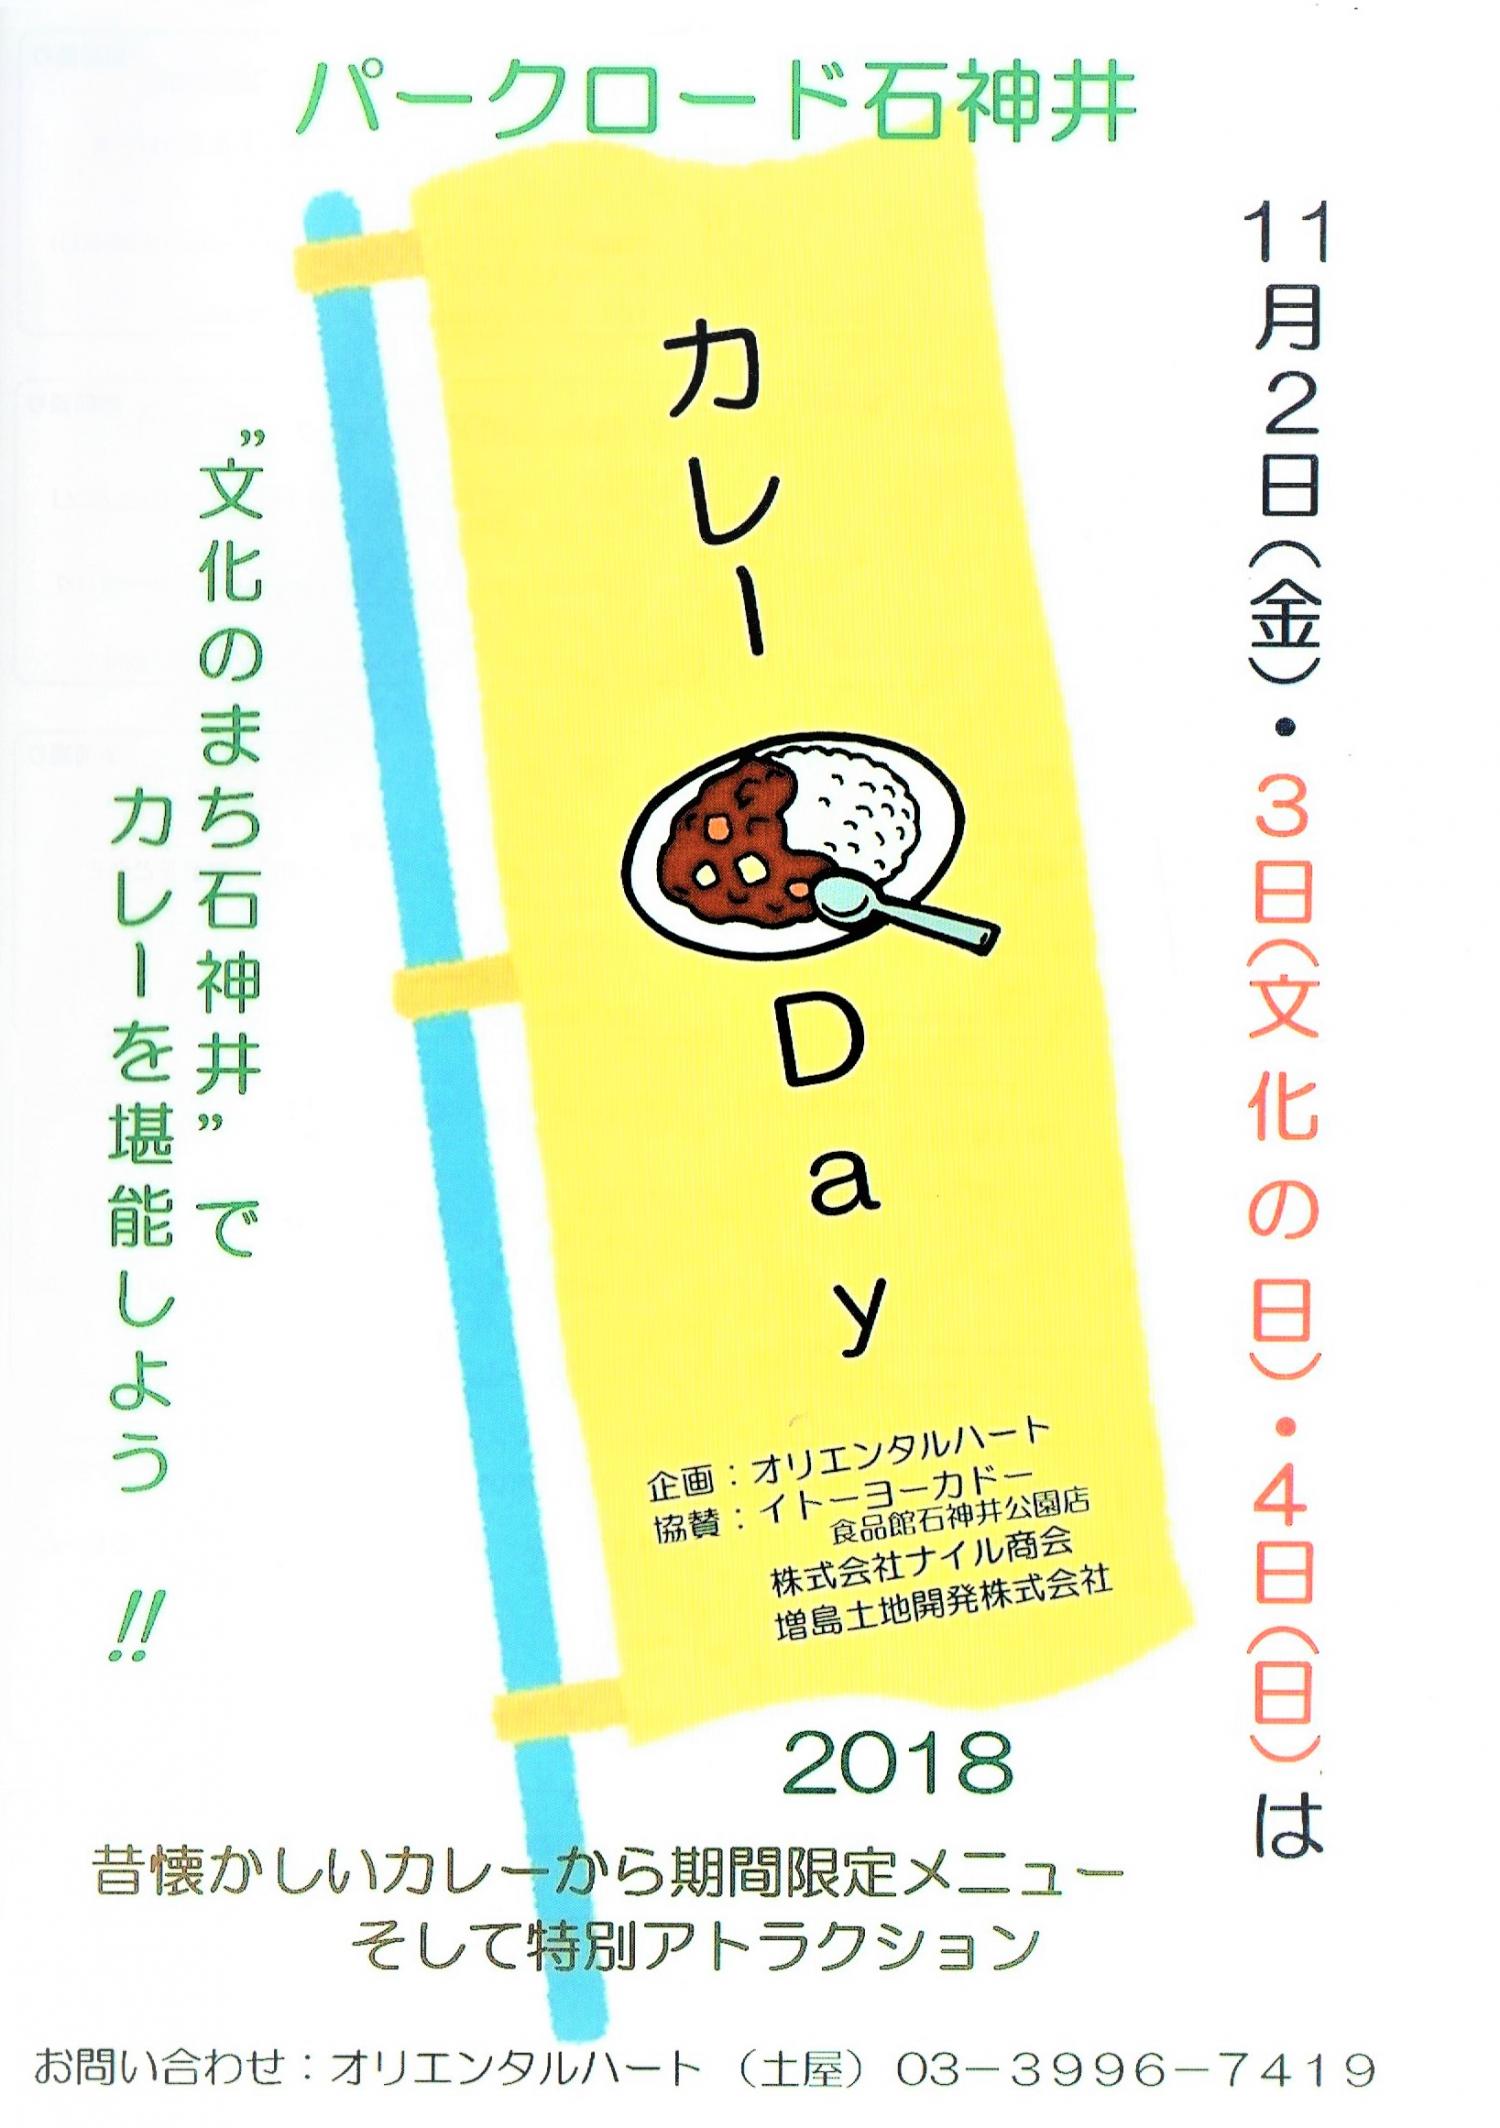 パークロード石神井カレーDay 2018 画像